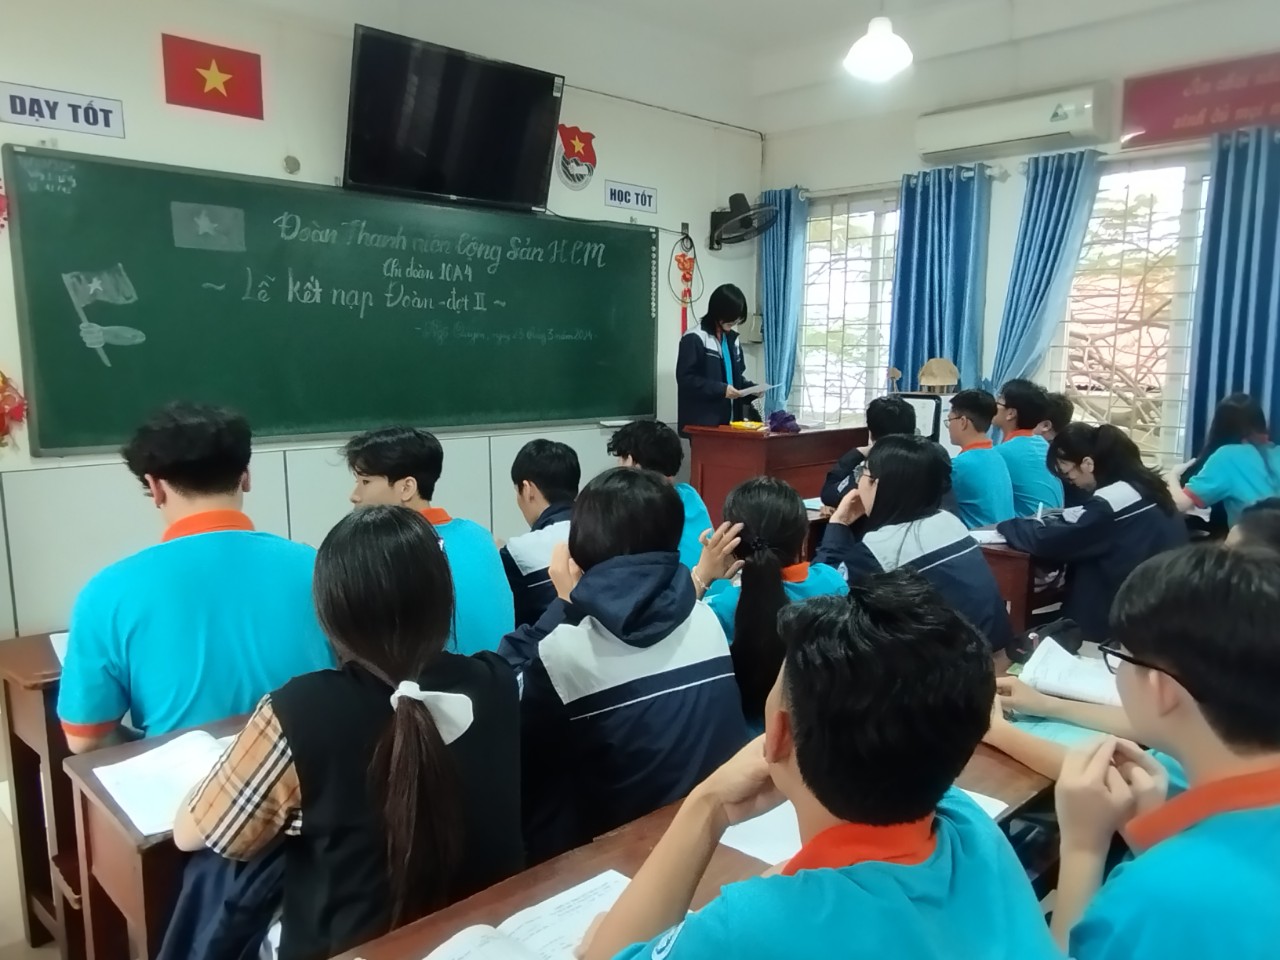 Trường THPT Thăng Long - Hải Phòng ảnh 2